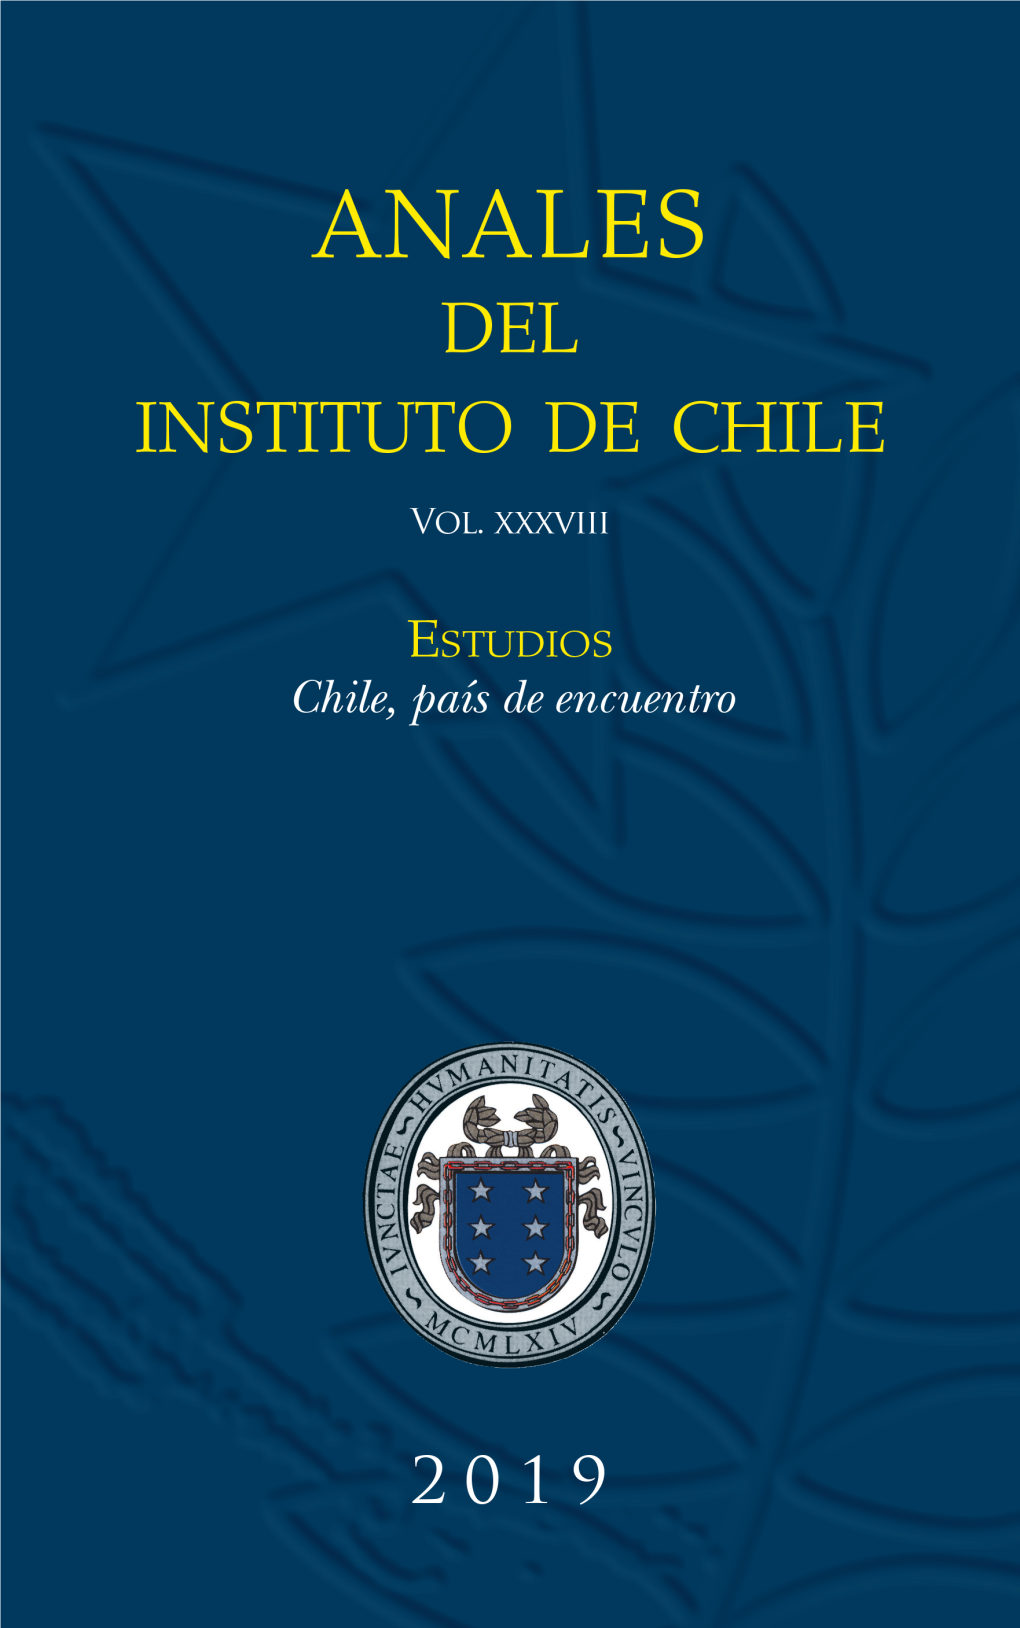 2019.Indd 2 29-11-2019 20:06:18 ANALES DEL INSTITUTO DE CHILE